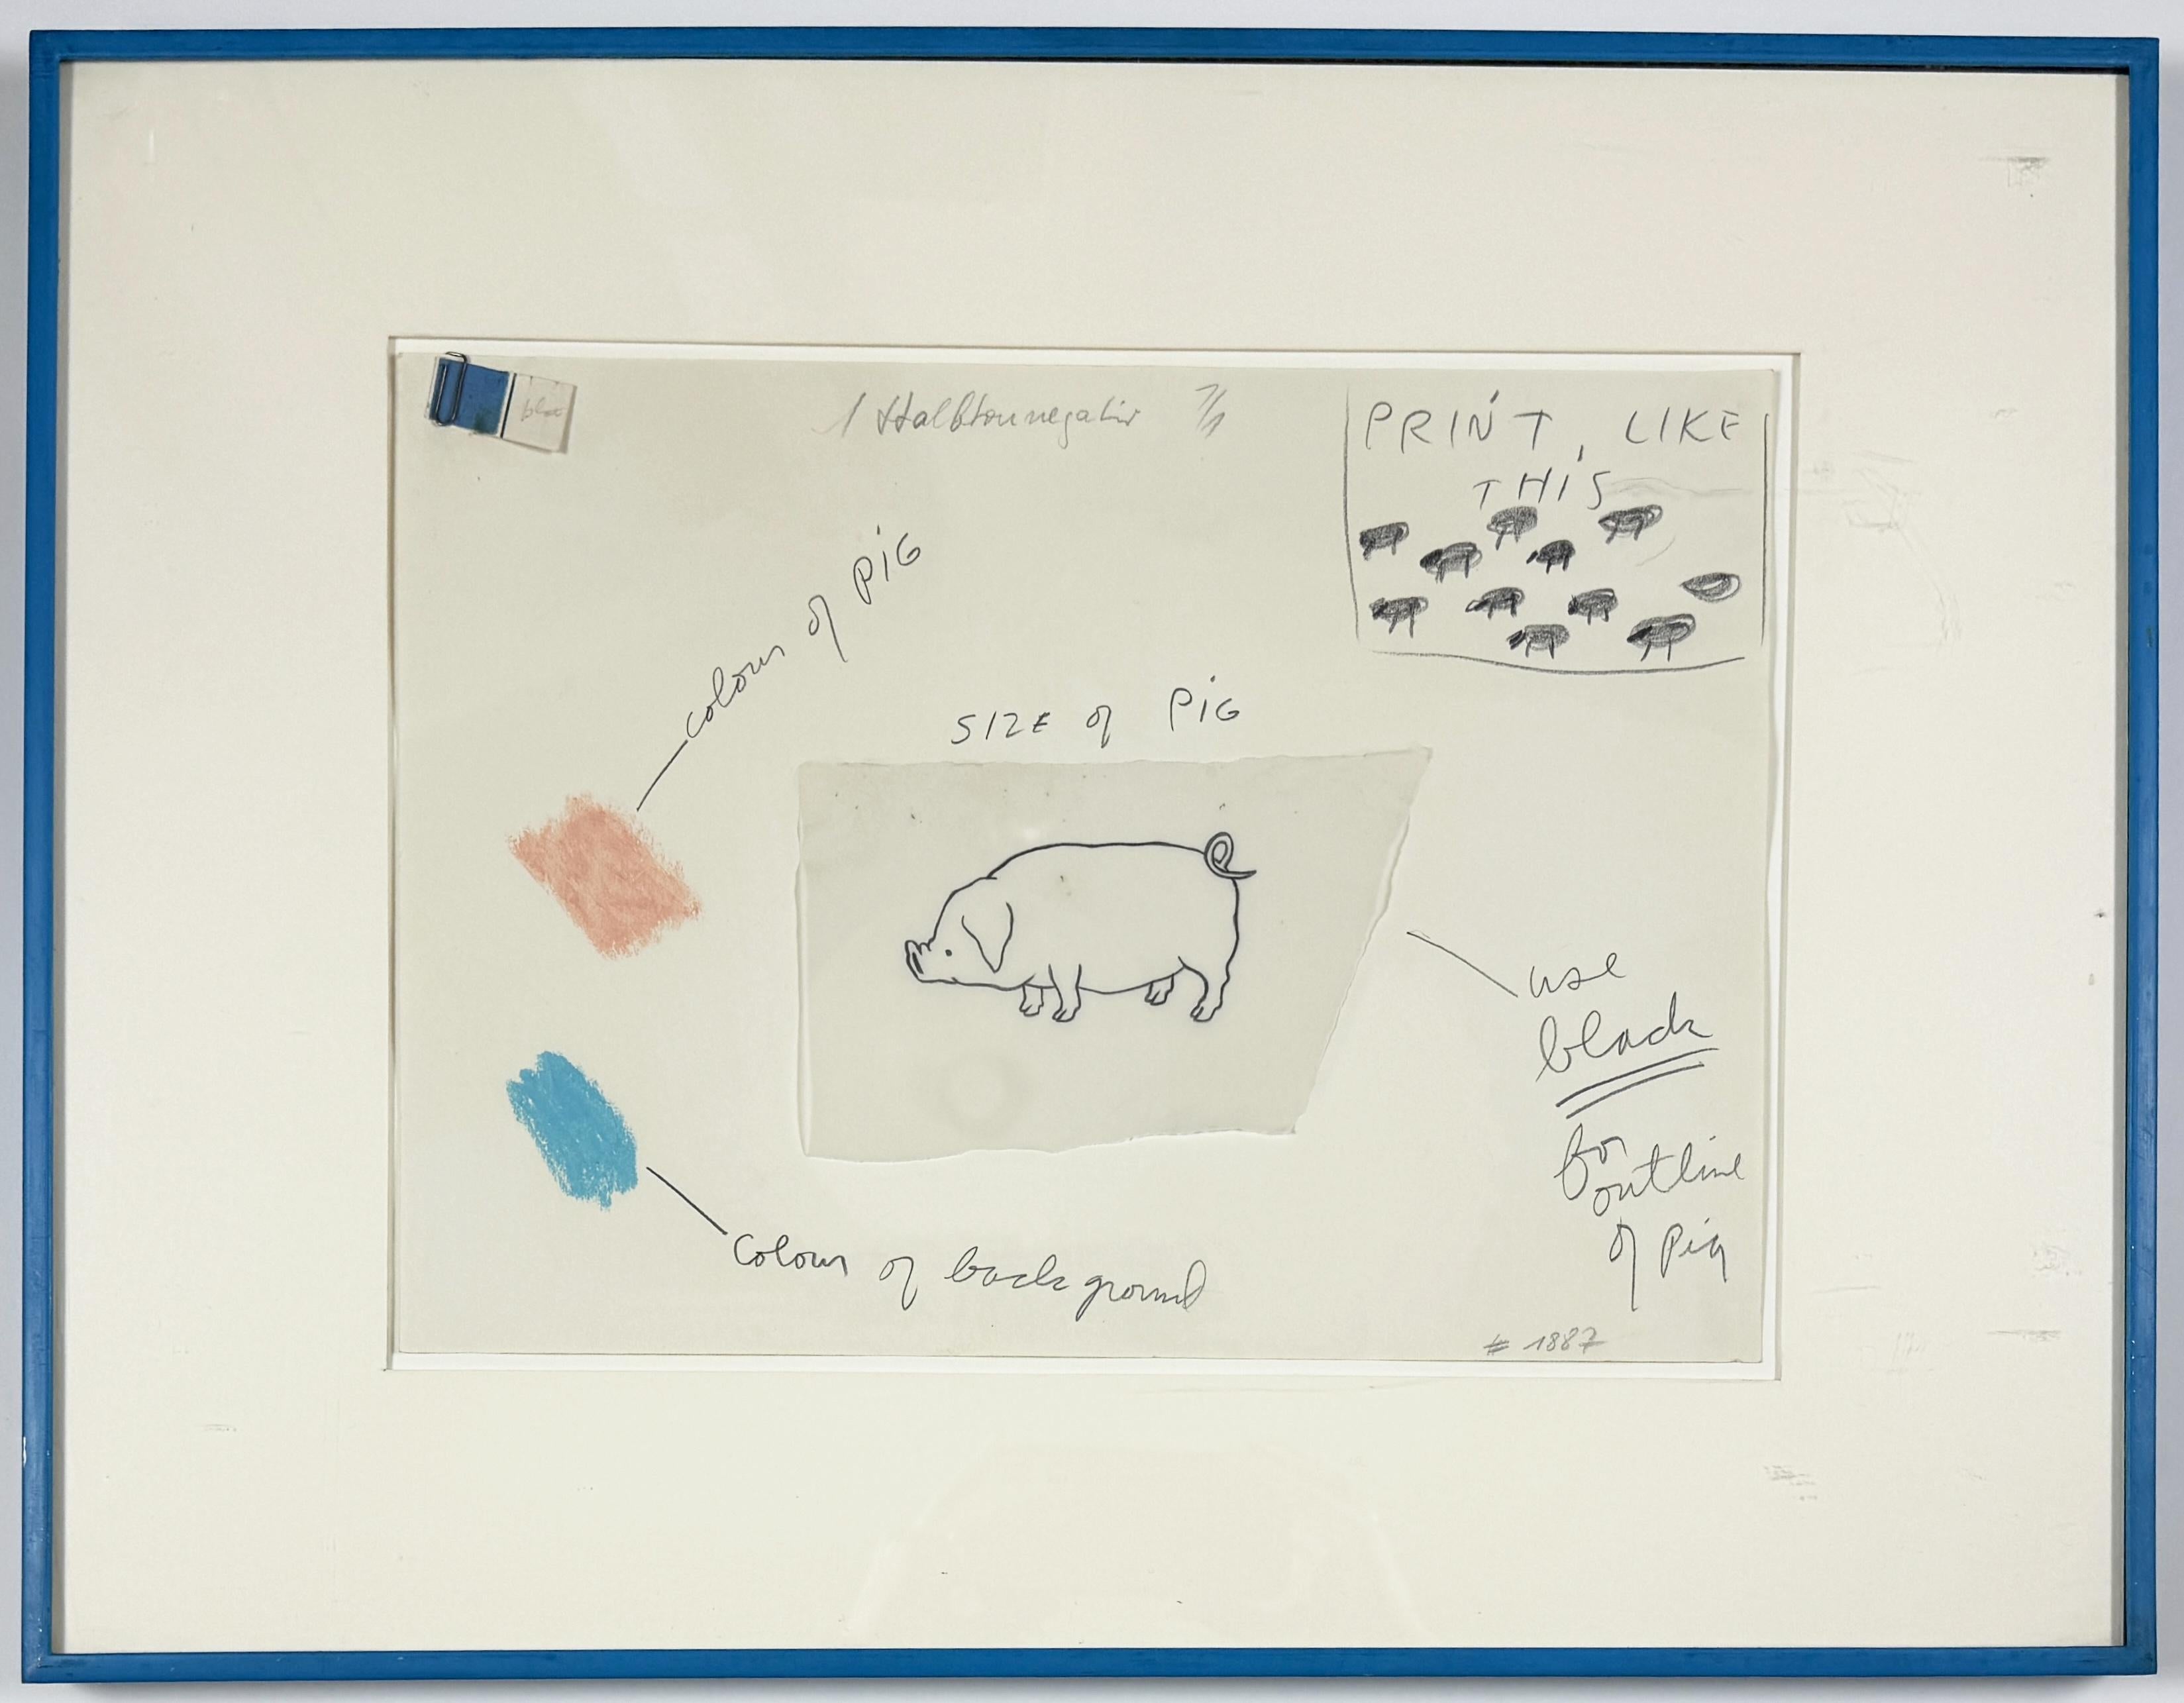 Diese Zeichnung ist eine Studie für die Portfolio-Box  aus der Mappe Jim Dine Oo La La mit 15 Lithografien, die im Offsetverfahren von Zinkplatten gedruckt wurden. Das Portfolio wurde in Collaboration mit Ron Padgett erstellt und von Petersburg